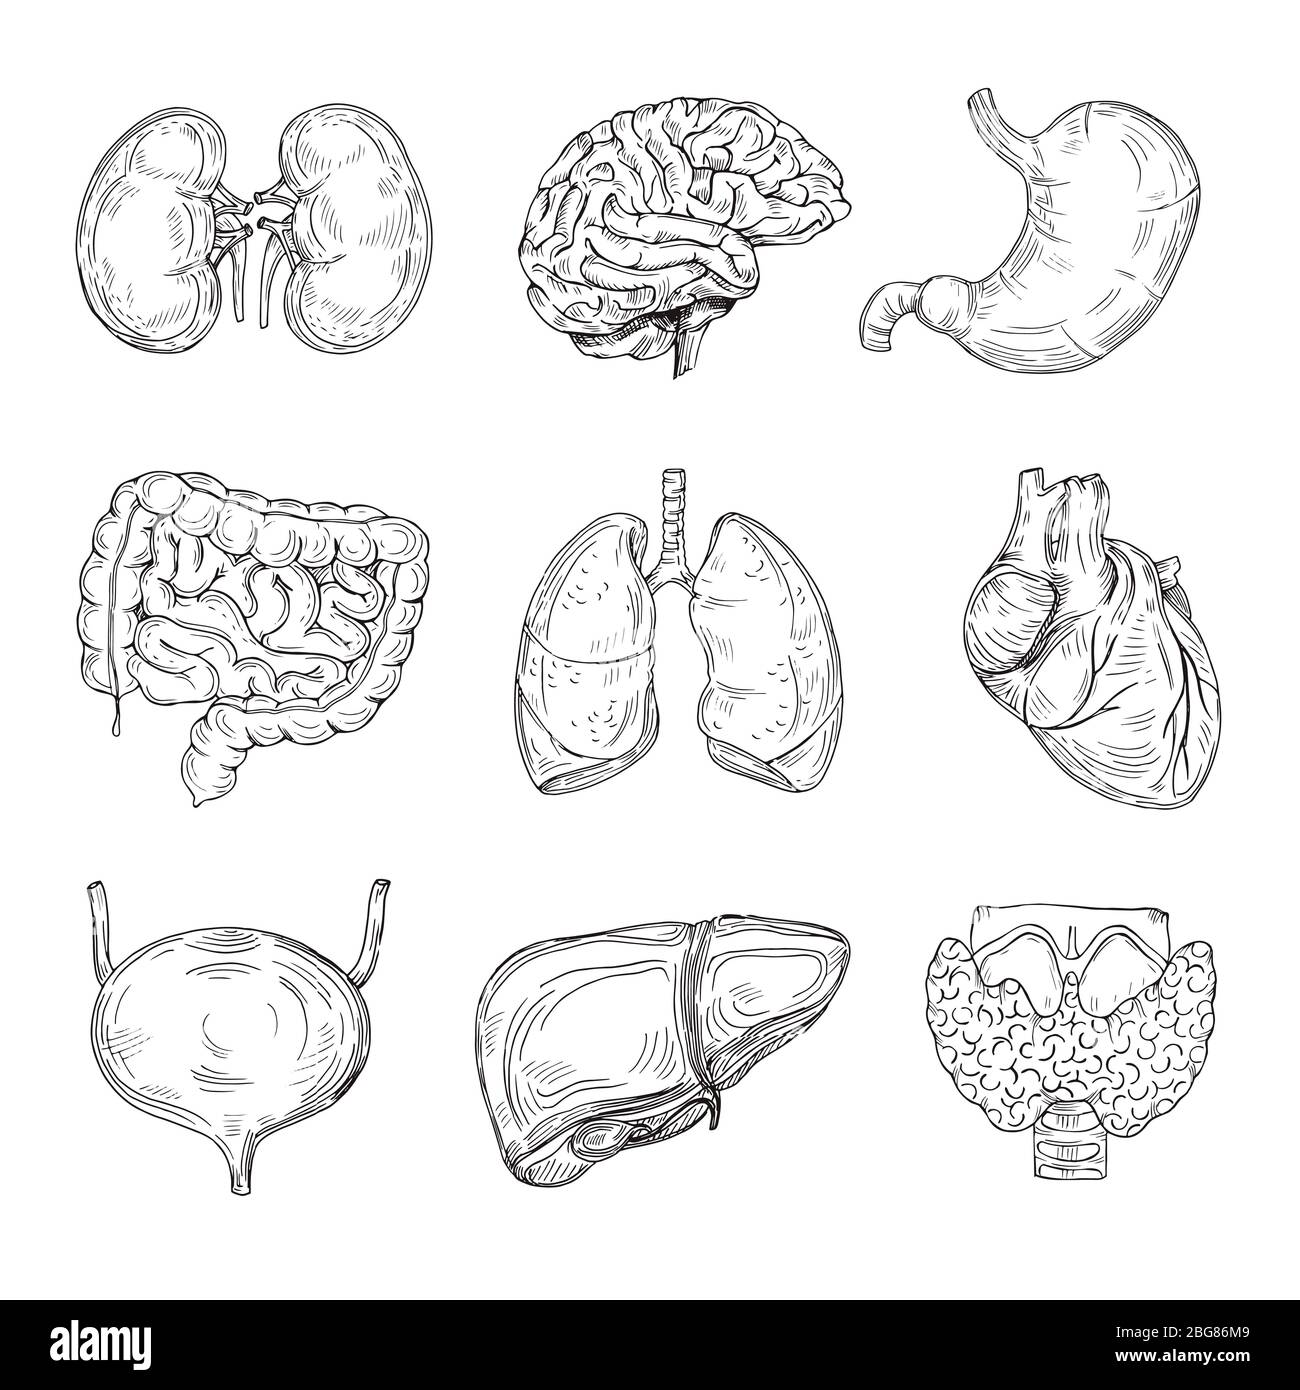 Menschliche innere Organe. Hand gezogenes Gehirn, Herz und Nieren, Magen und Blase. Skizze medizinische isolierte Vektor Illustration. Darmorgan der Collecti Stock Vektor